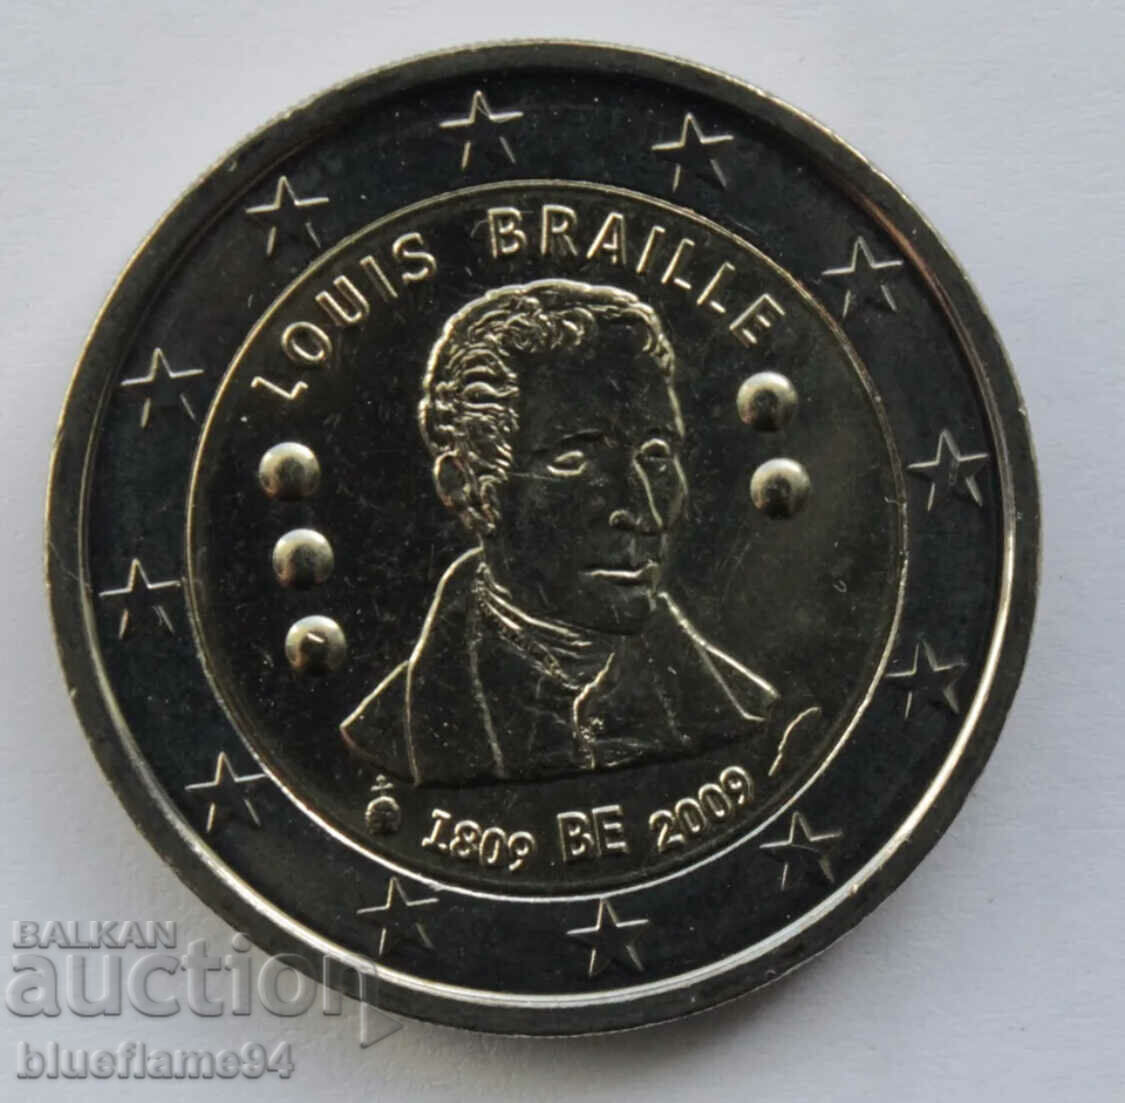 2 euros Belgium 2009